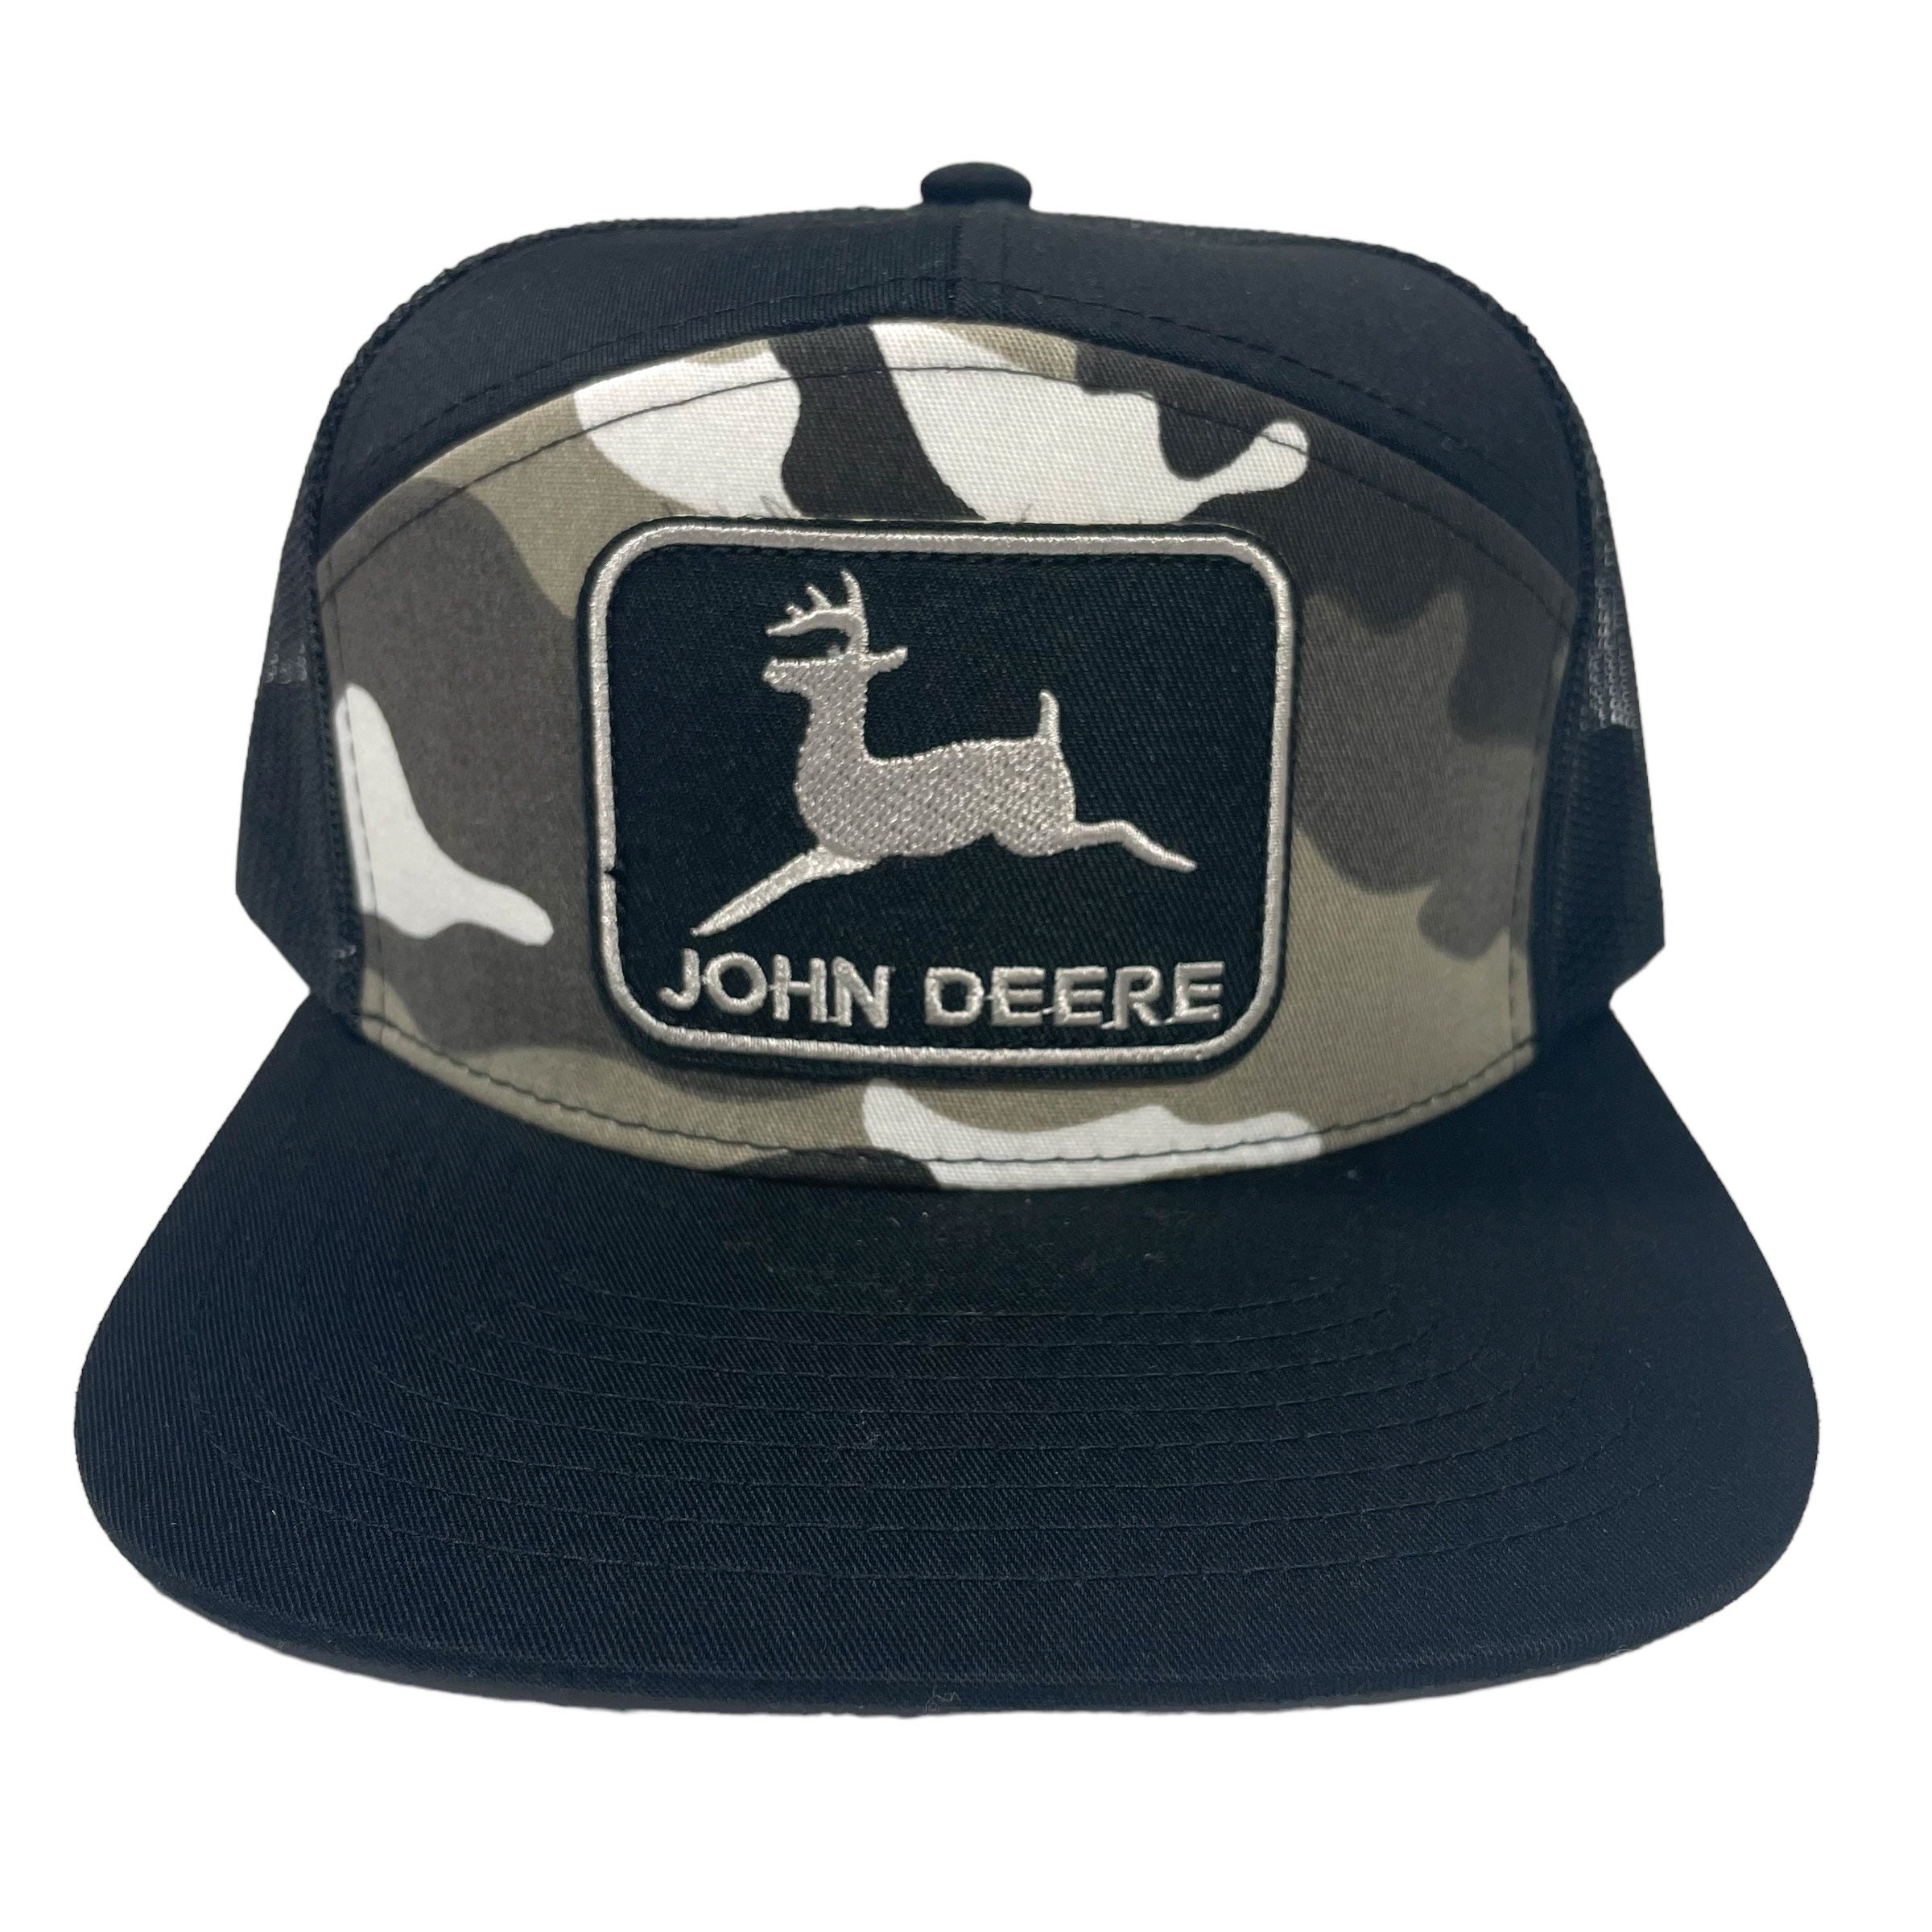 John deere black for sale  